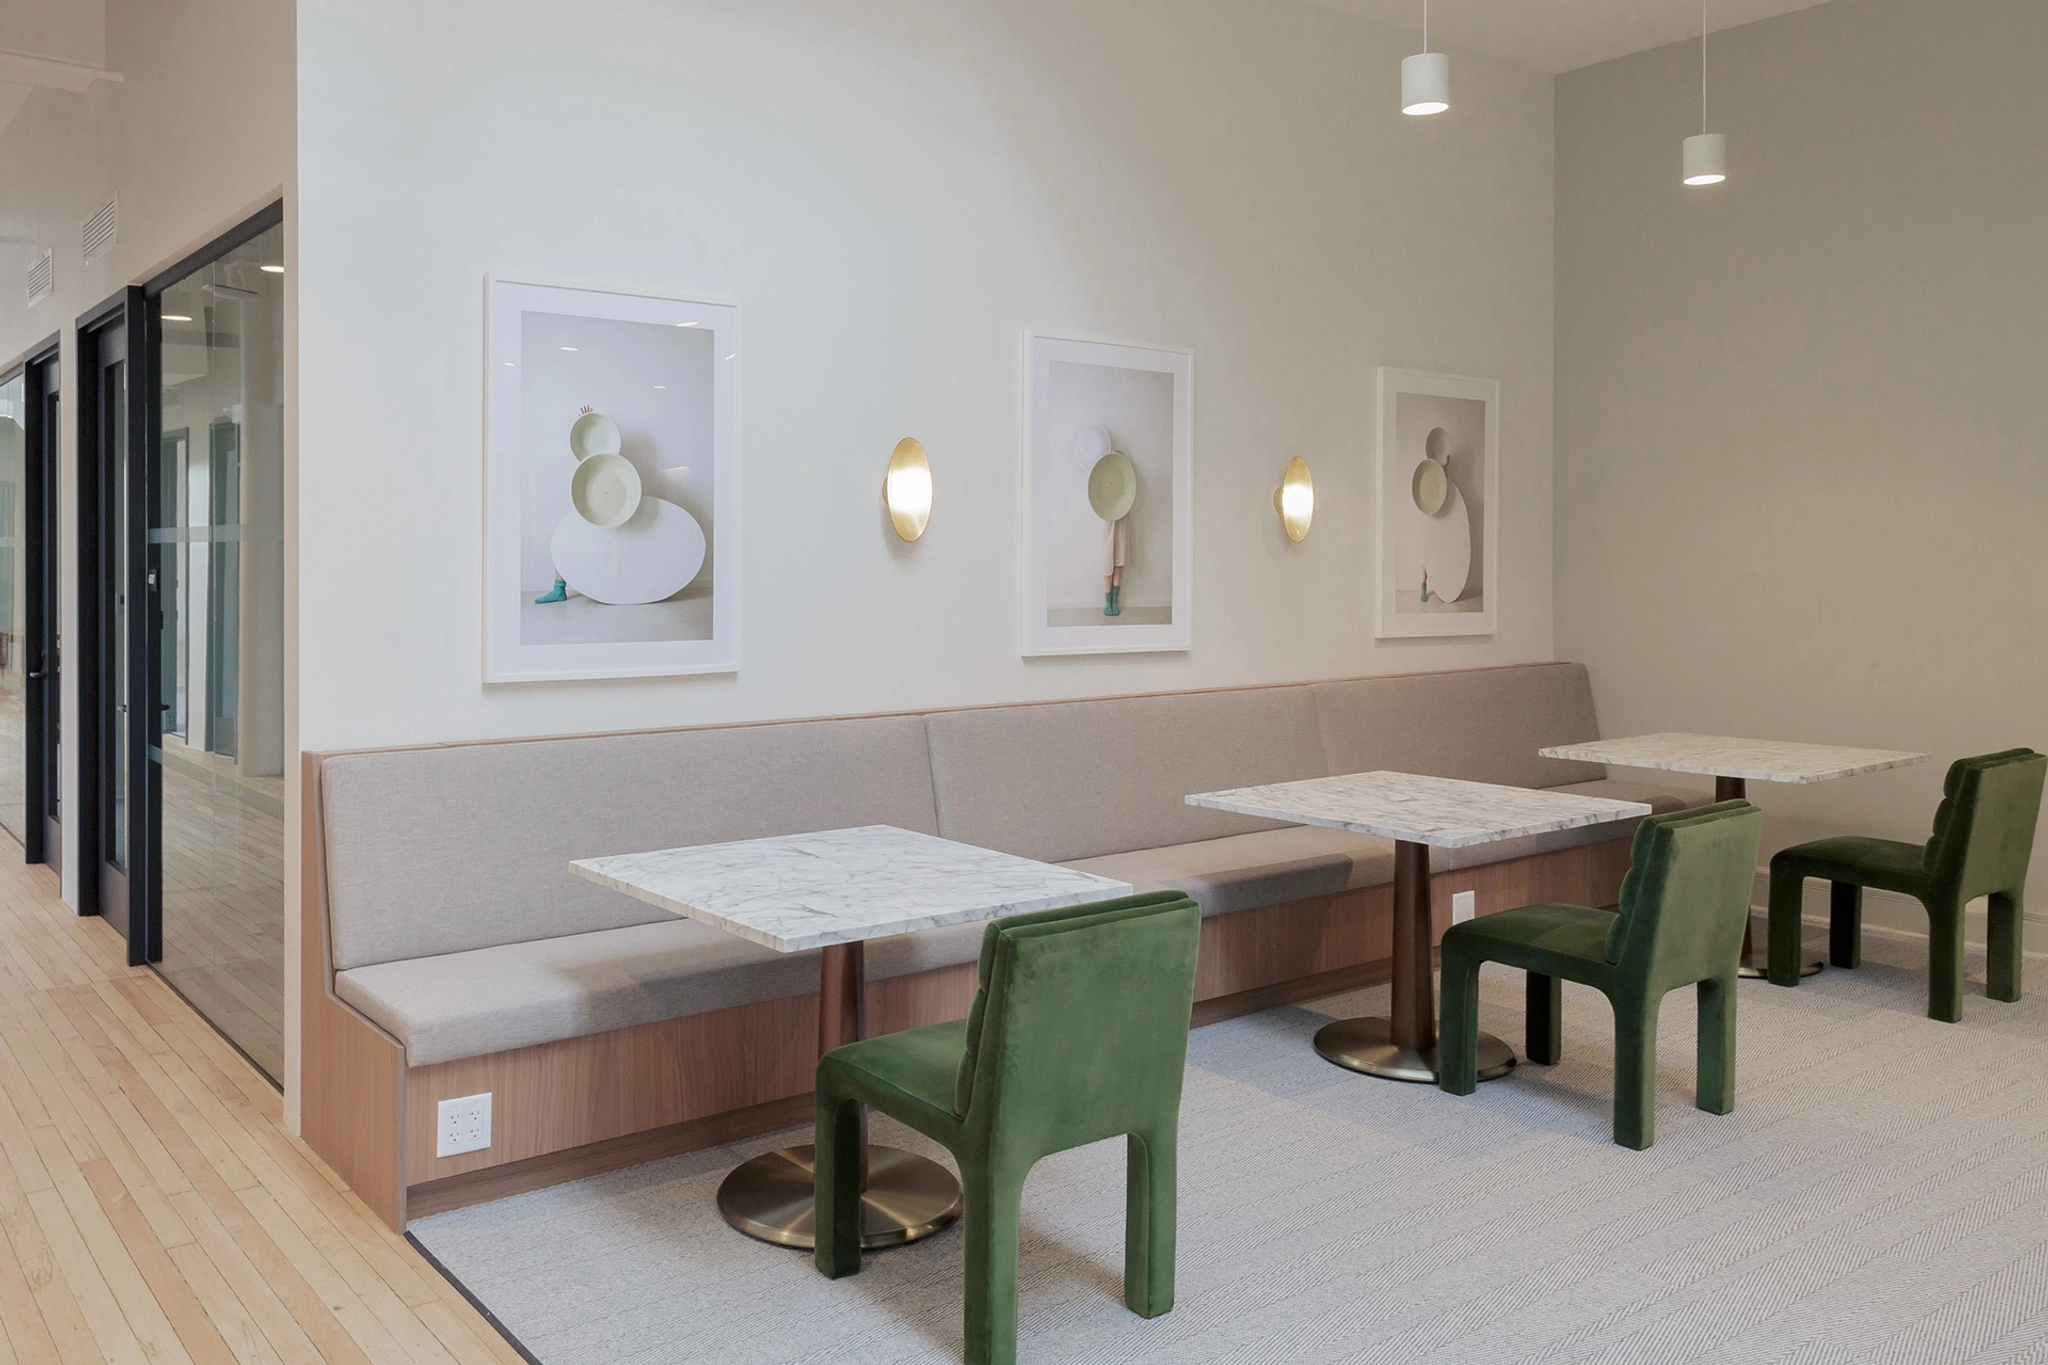 Une salle de réunion avec tables et chaises dans un bureau new-yorkais.